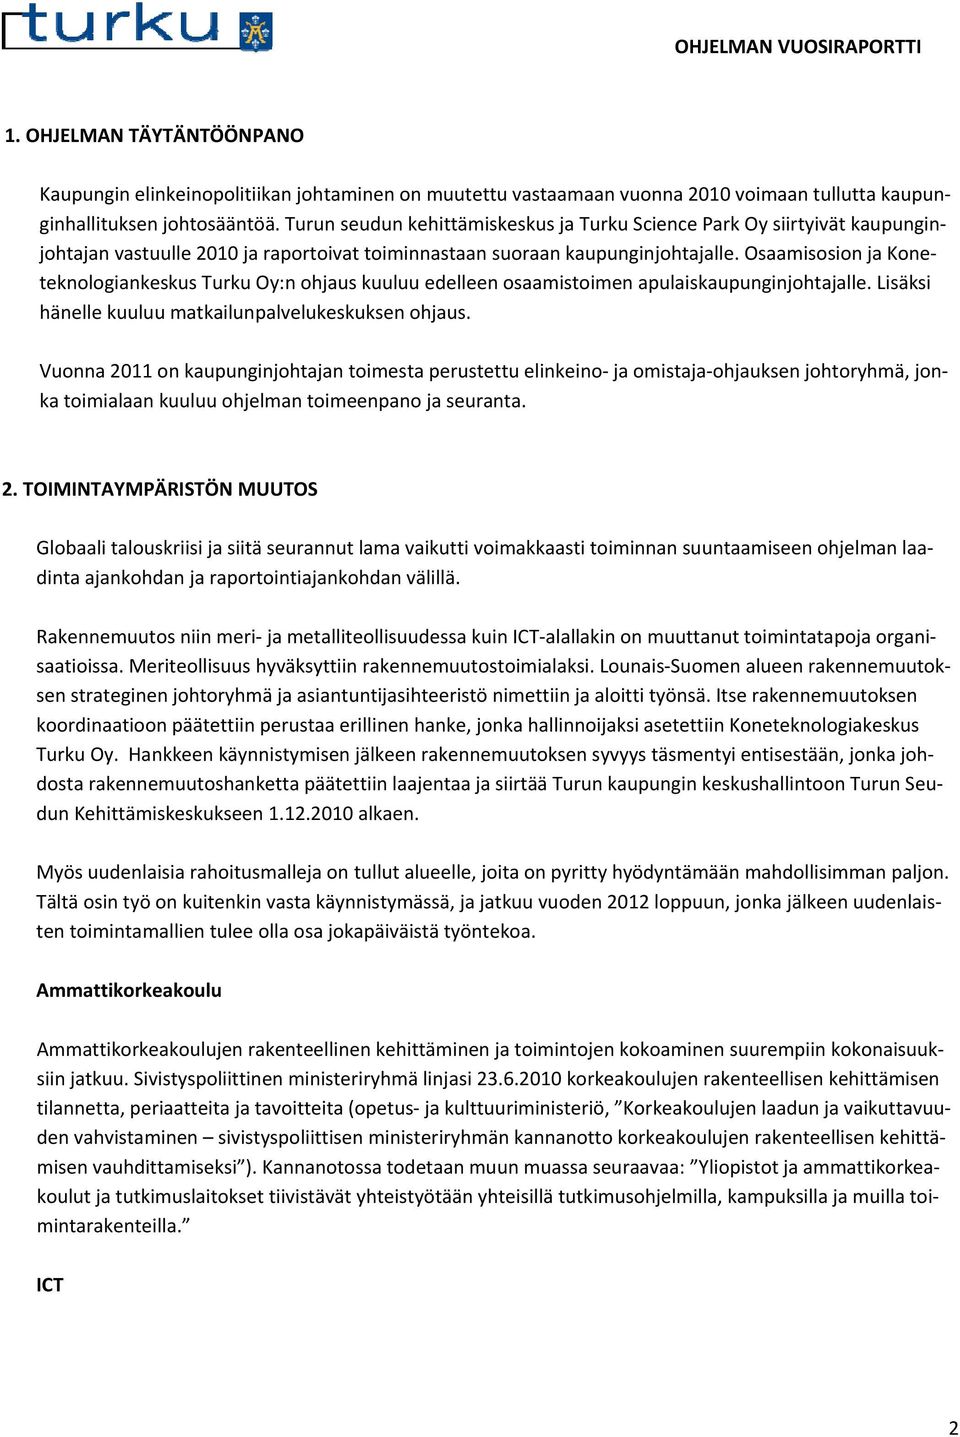 Osaamisosion ja Koneteknologiankeskus Turku Oy:n ohjaus kuuluu edelleen osaamistoimen apulaiskaupunginjohtajalle. Lisäksi hänelle kuuluu matkailunpalvelukeskuksen ohjaus.